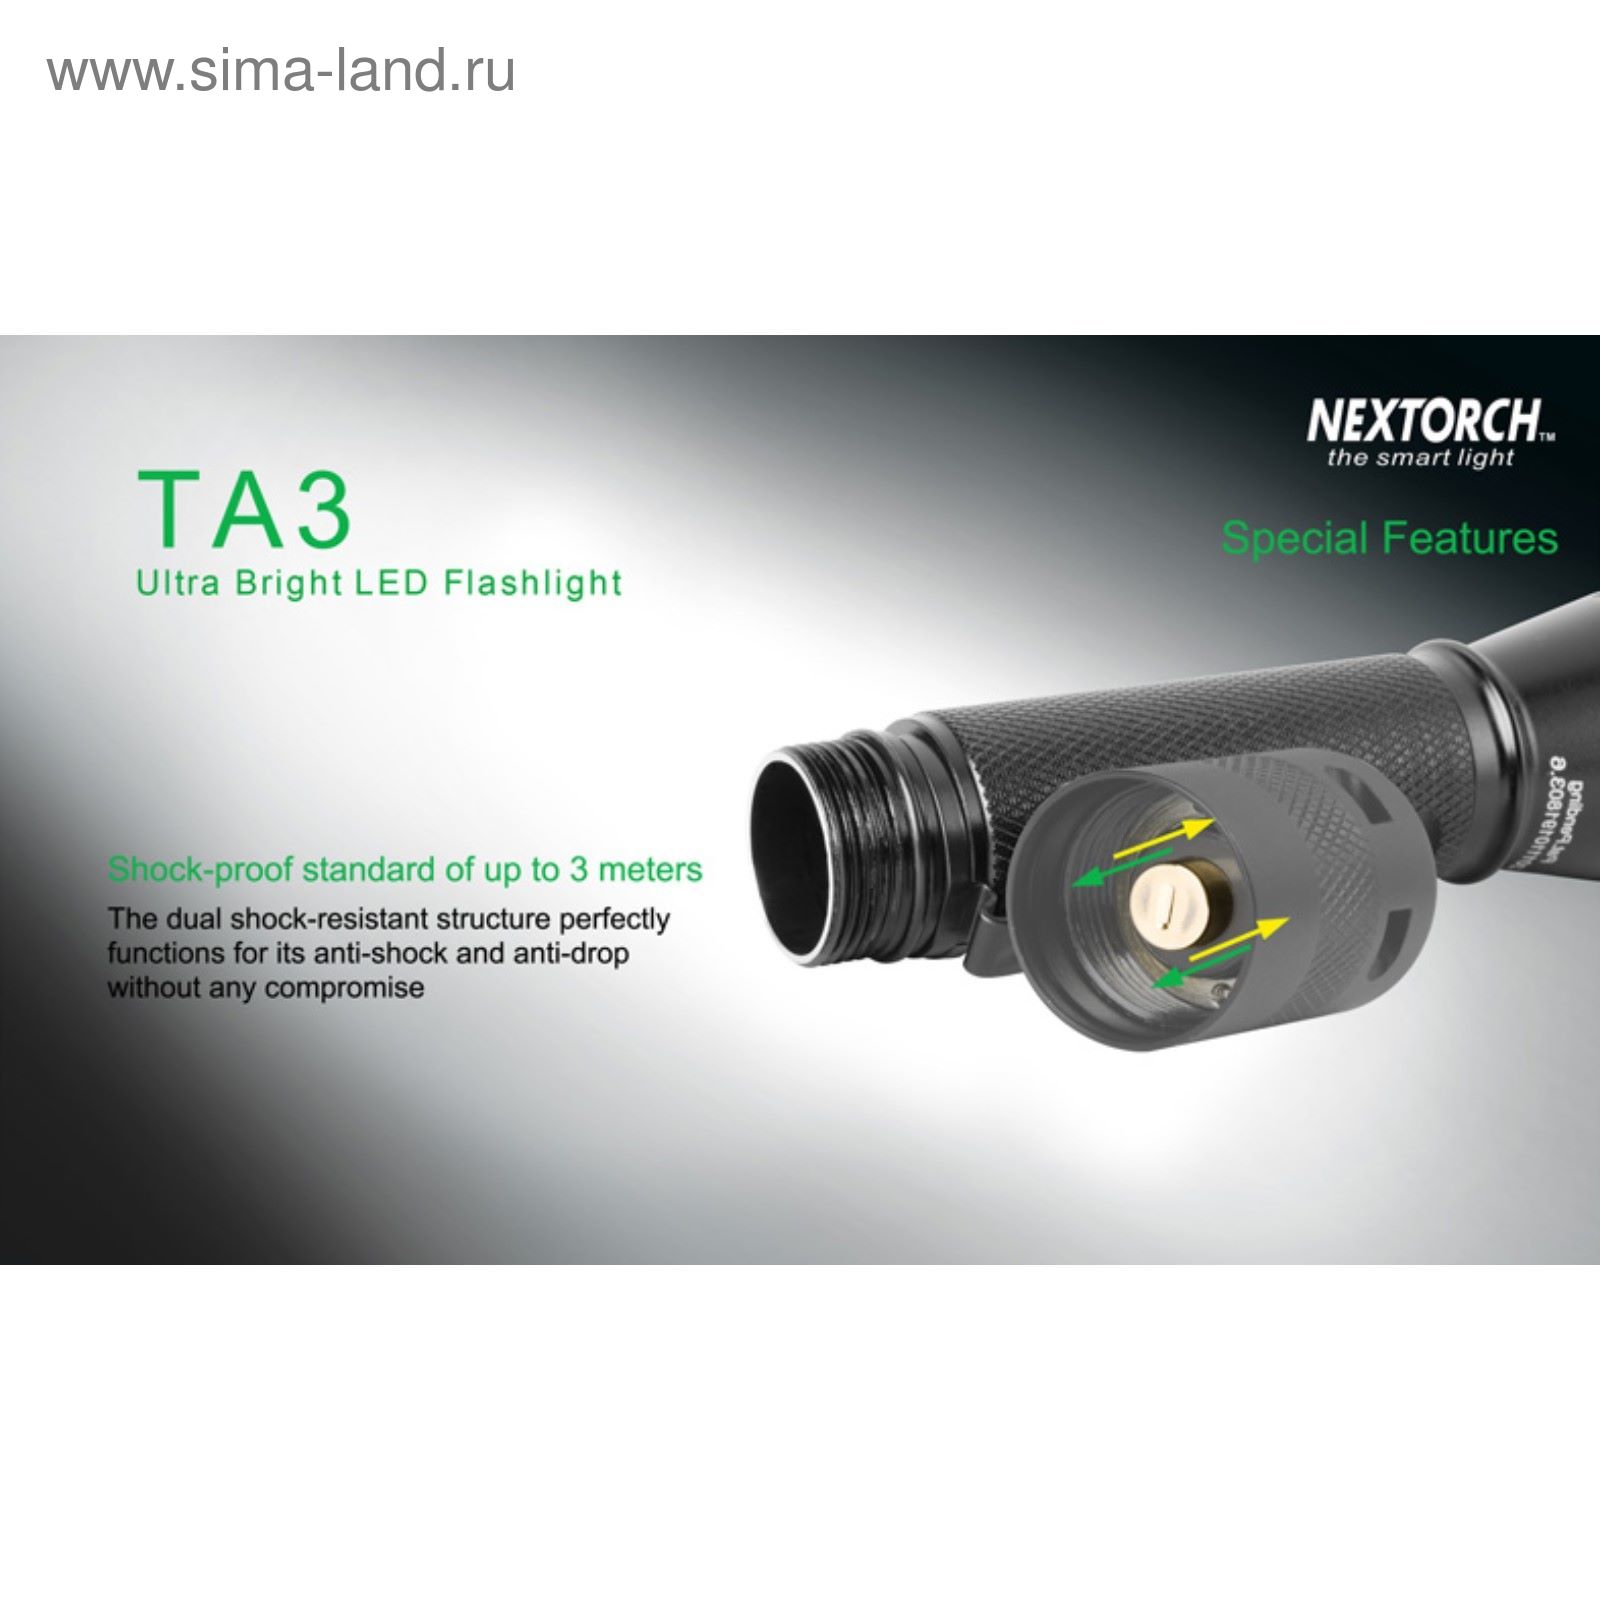 Подствольный фонарь TA3 светодиодный Cree LED 550 люмен, 6 режимов работы